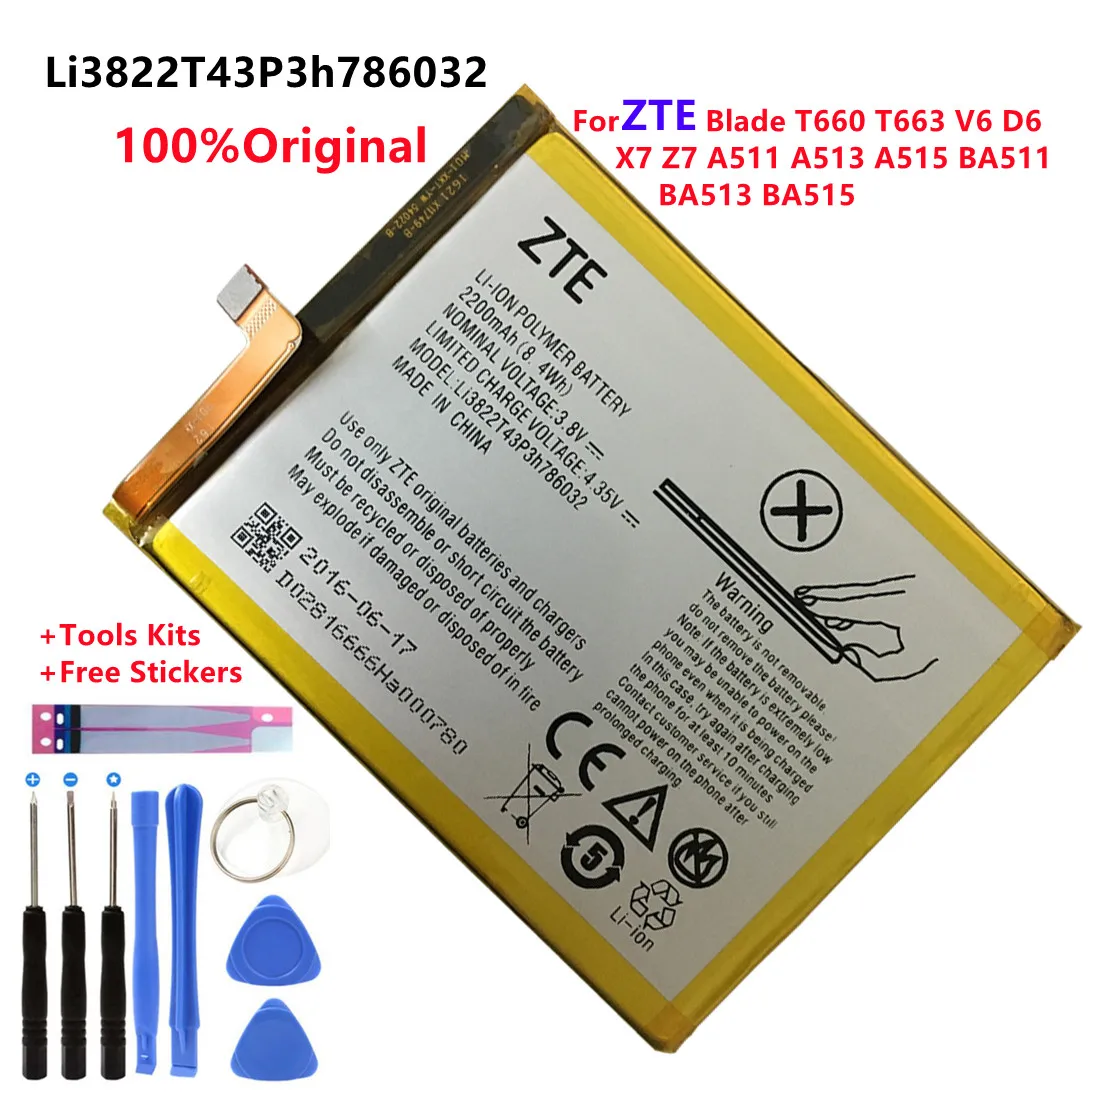 

Li3822T43P3h786032 Orbic-RC-501L Battery For ZTE Blade T660 T663 V6 D6 X7 Z7 A511 A513 A515 BA511 BA513 BA515 Bateria + Tools